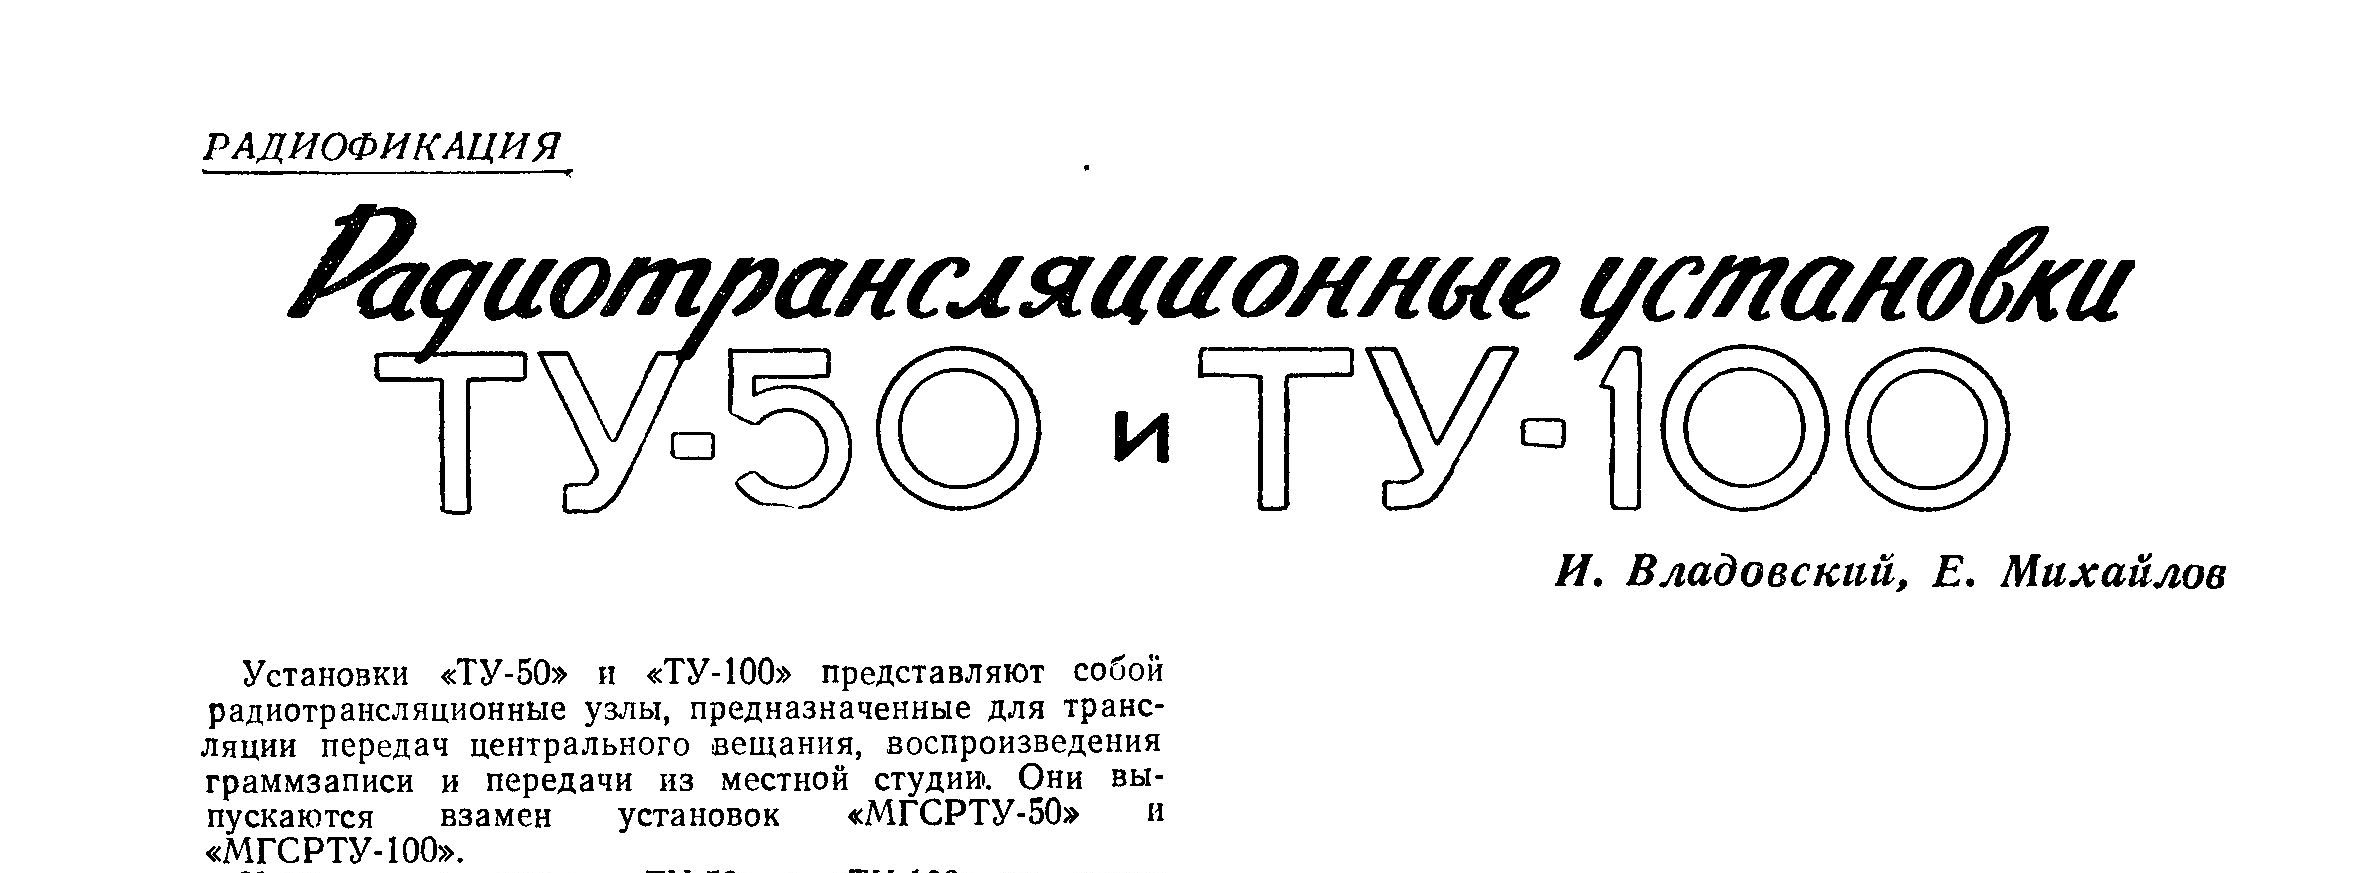 Радиотрансляционные установки ТУ-50 и ТУ-100 (фрагмент)